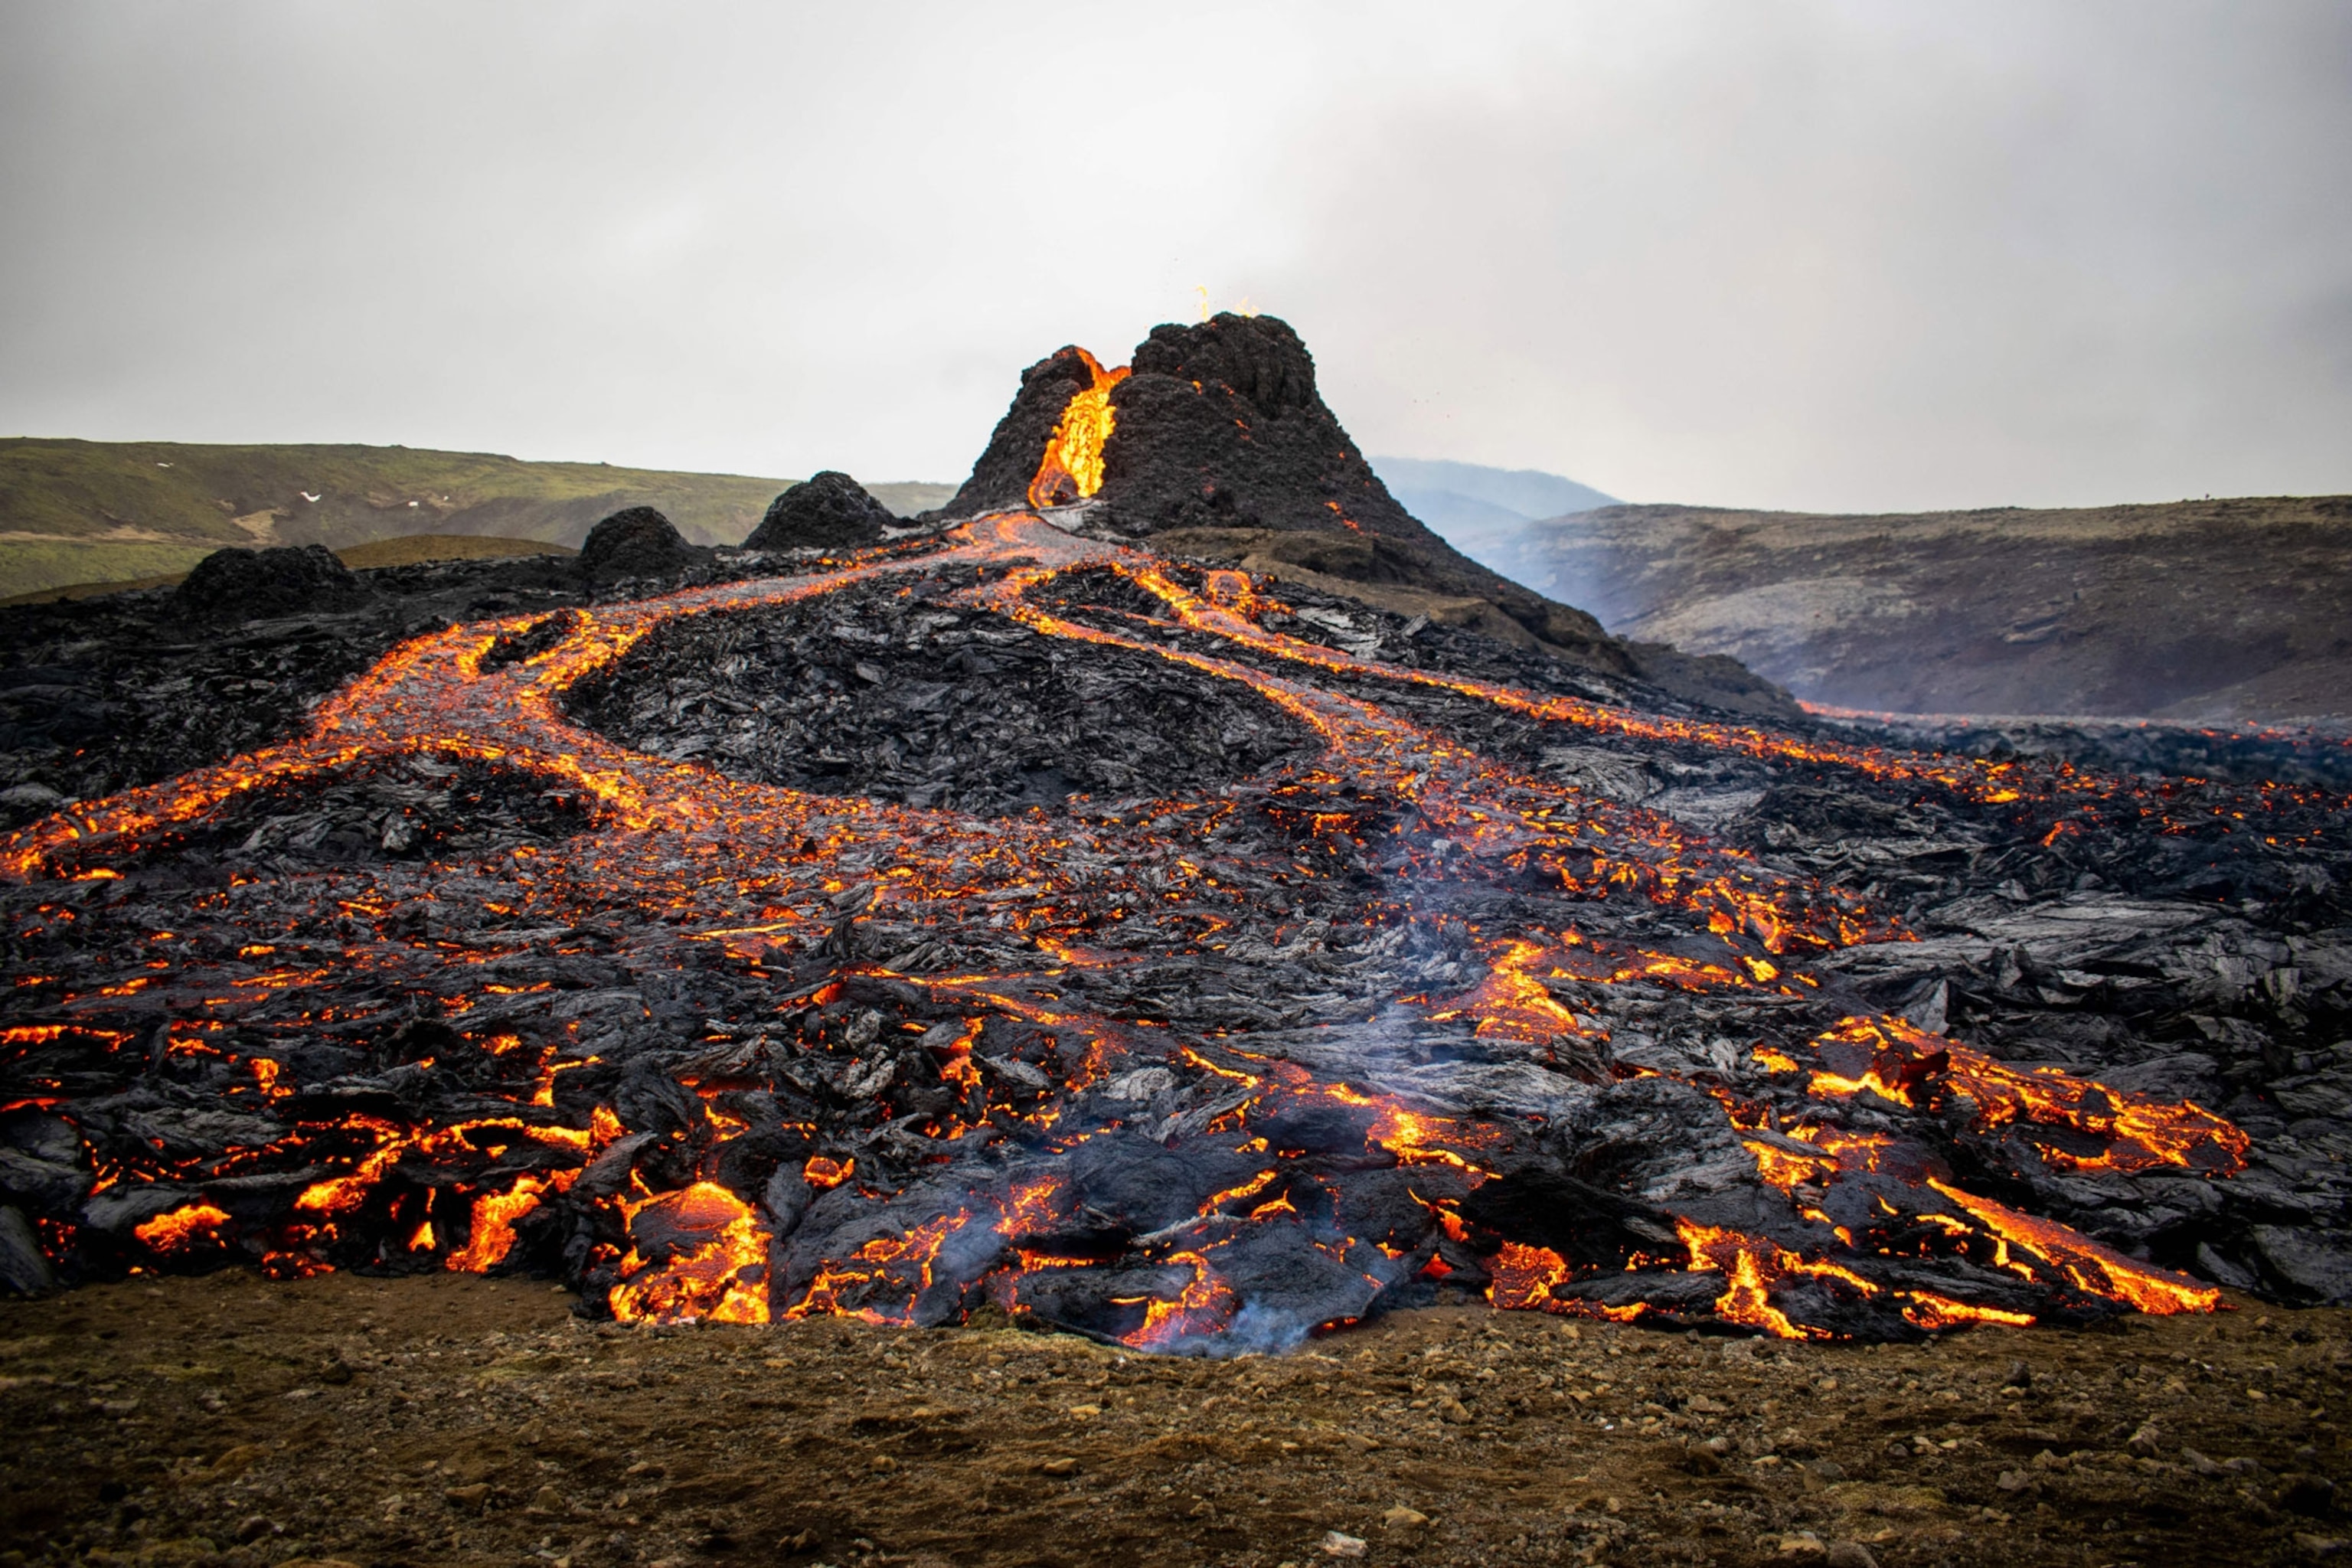 Почему в исландии большое количество вулканов. Извержение вулкана в Исландии Эйяфьятлайокудль. Извержение вулкана в Исландии 2021. Исландия вулкан Эйяфьятлайокудль извержение 2010. Вулкан фаградалсфьяль в Исландии.